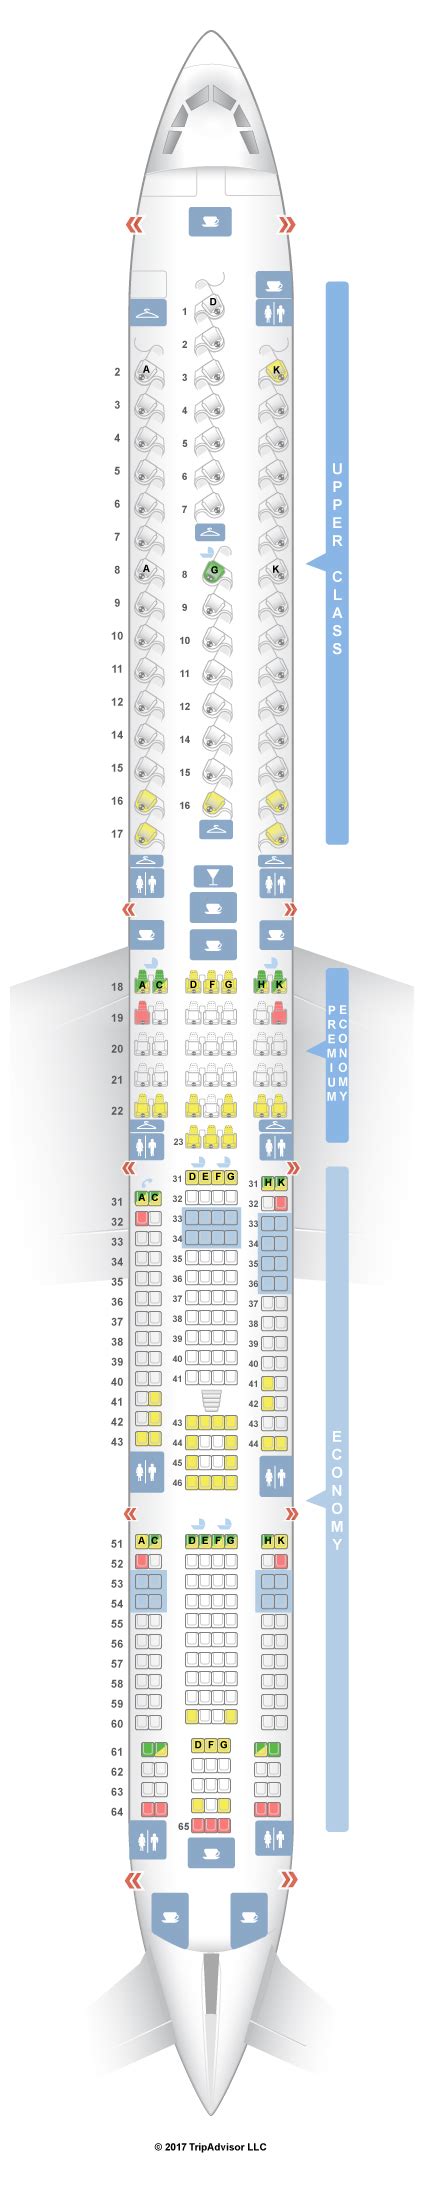 Seatguru Seat Map Virgin Atlantic Airbus A340 600 346